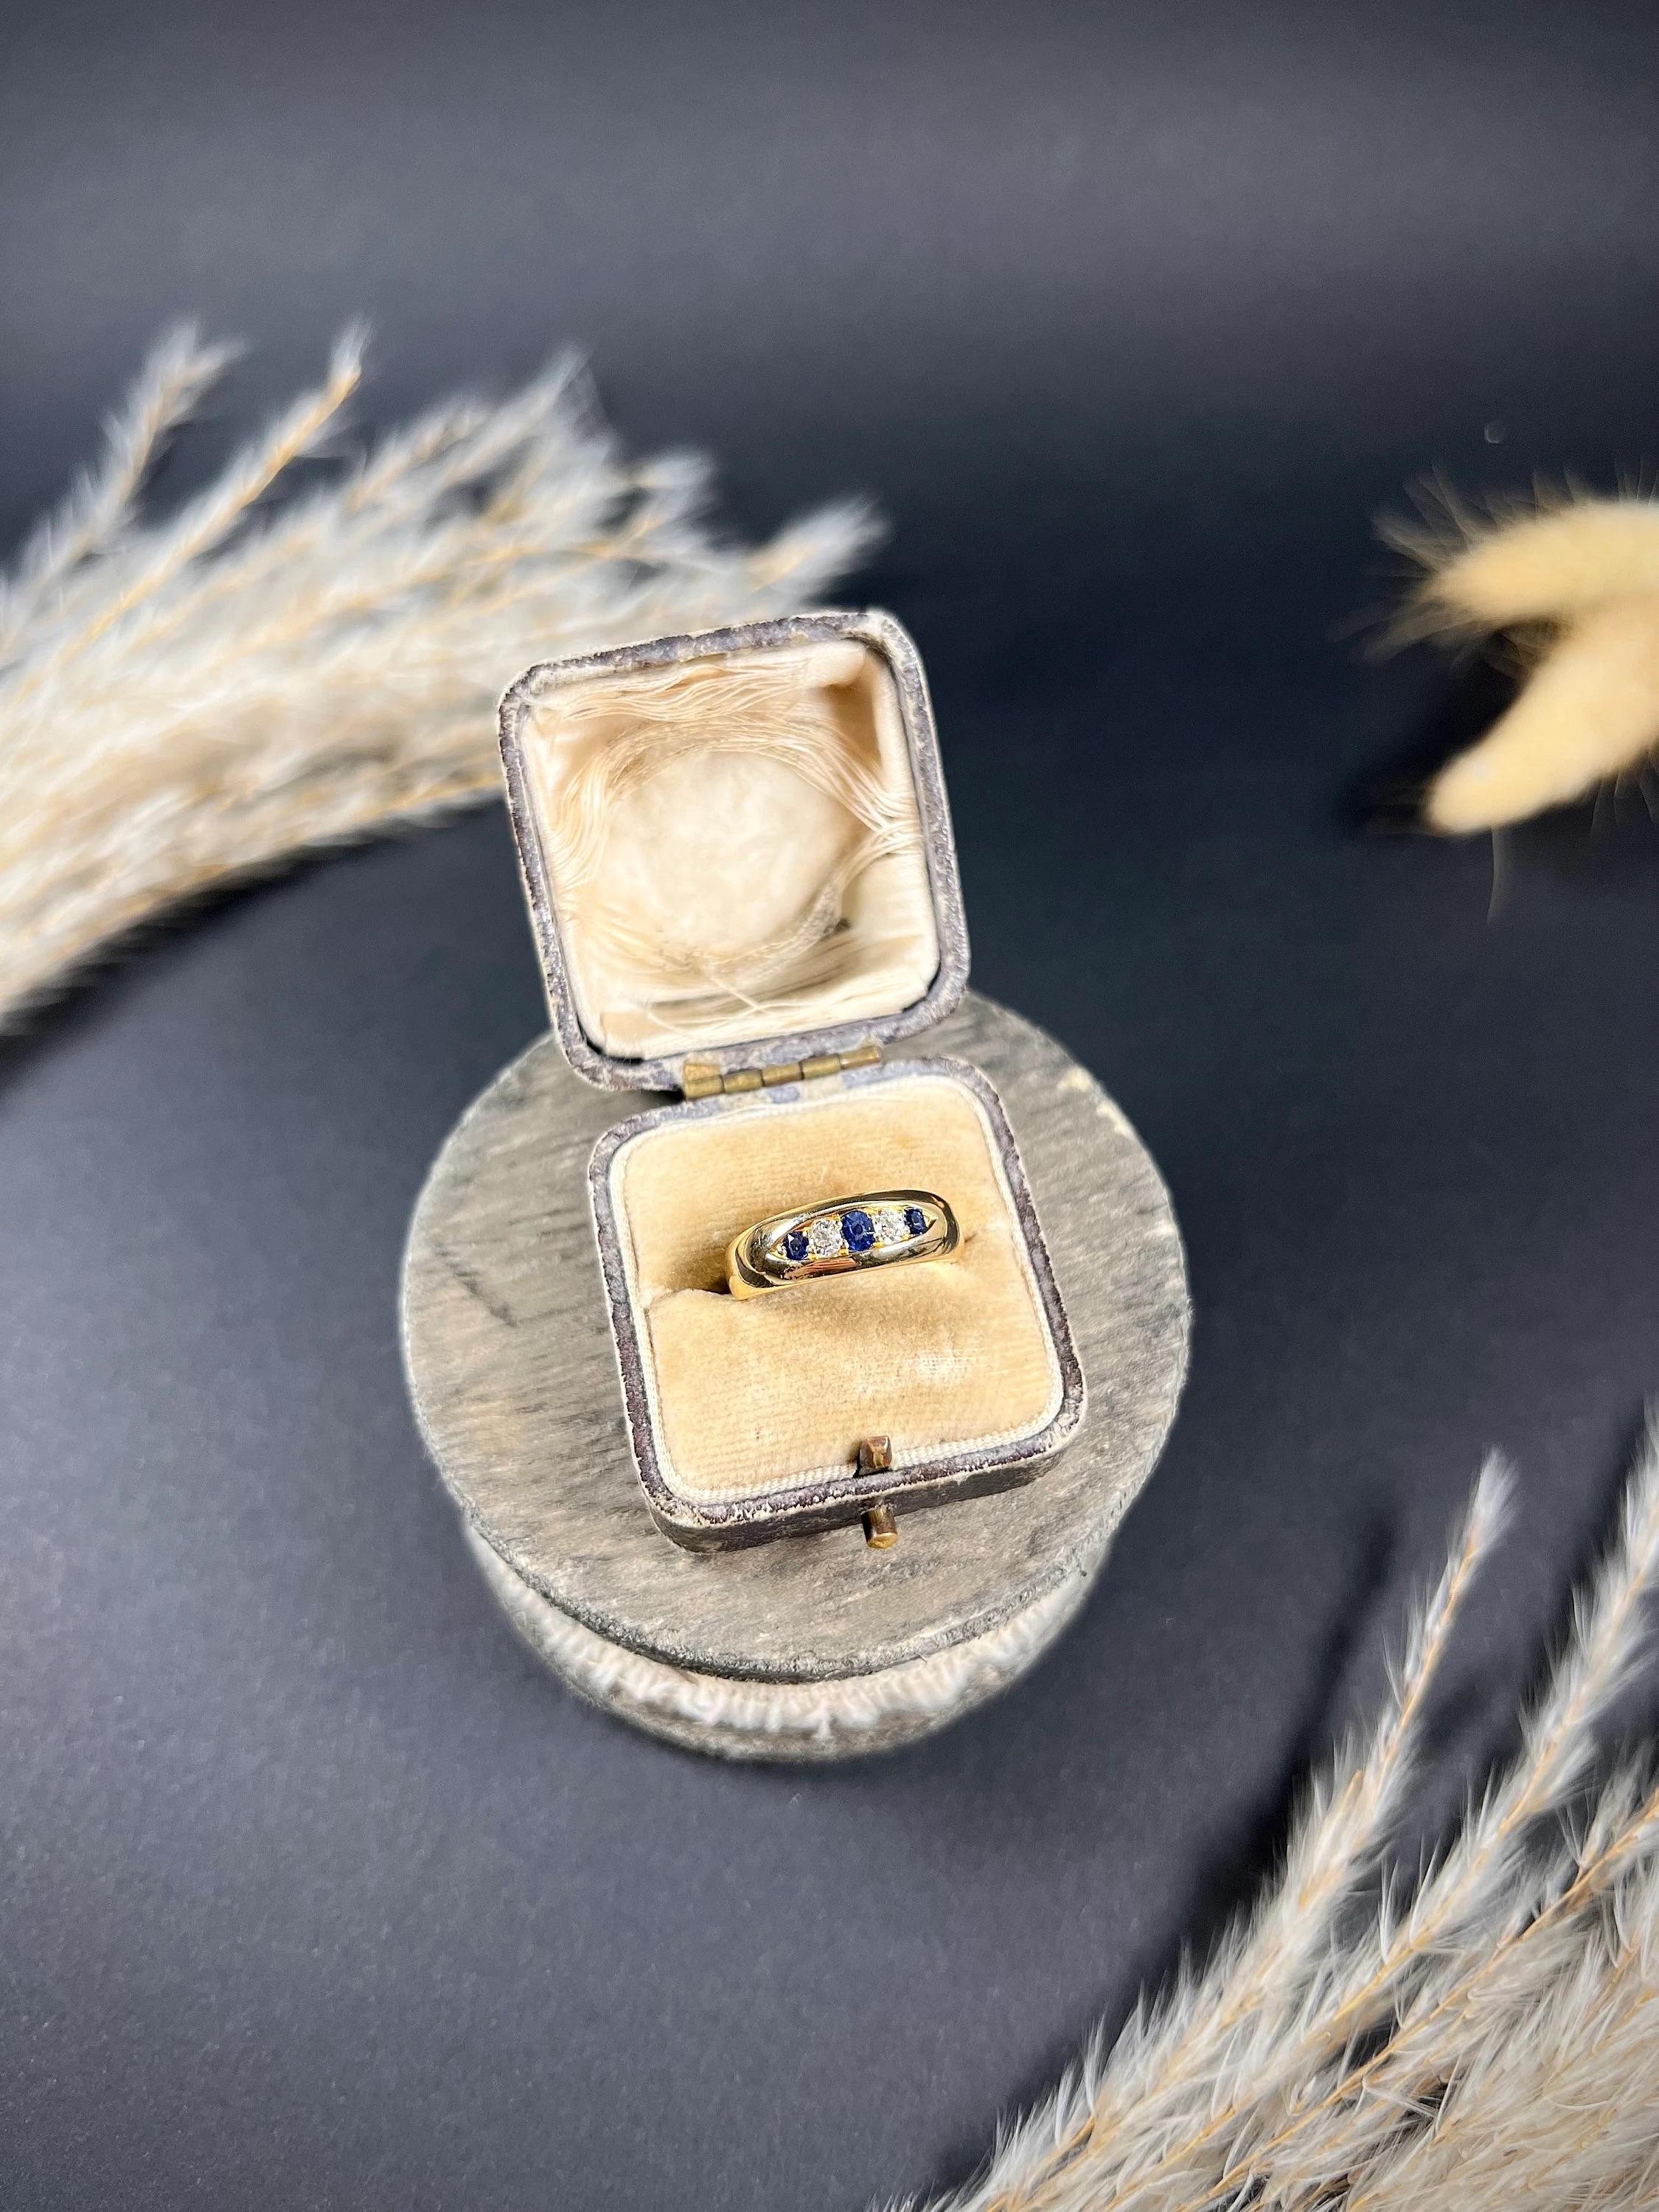 Antiker Saphir- und Diamantring 

18ct Gold gestempelt 

Gepunzt: Birmingham 1891

Dieser atemberaubende viktorianische Ring aus 18 Karat Gelbgold mit fünf Steinen ist ein wahres Kunstwerk. Der Ring ist mit einer Kombination aus natürlichen Saphiren